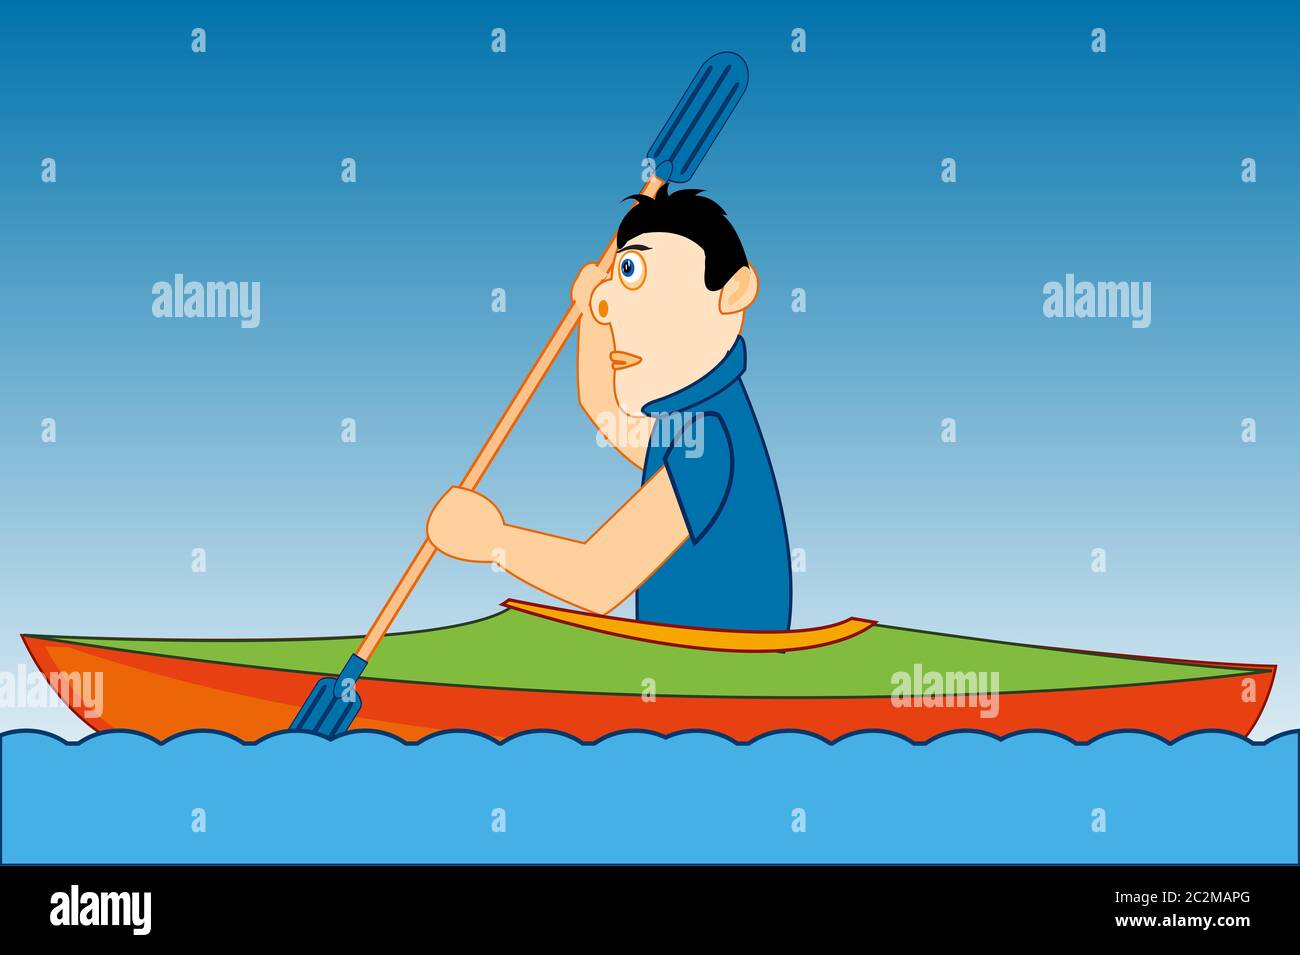 Ilustración vectorial de los hombres de dibujos animados en kayak de barco fusión en la ola Foto de stock